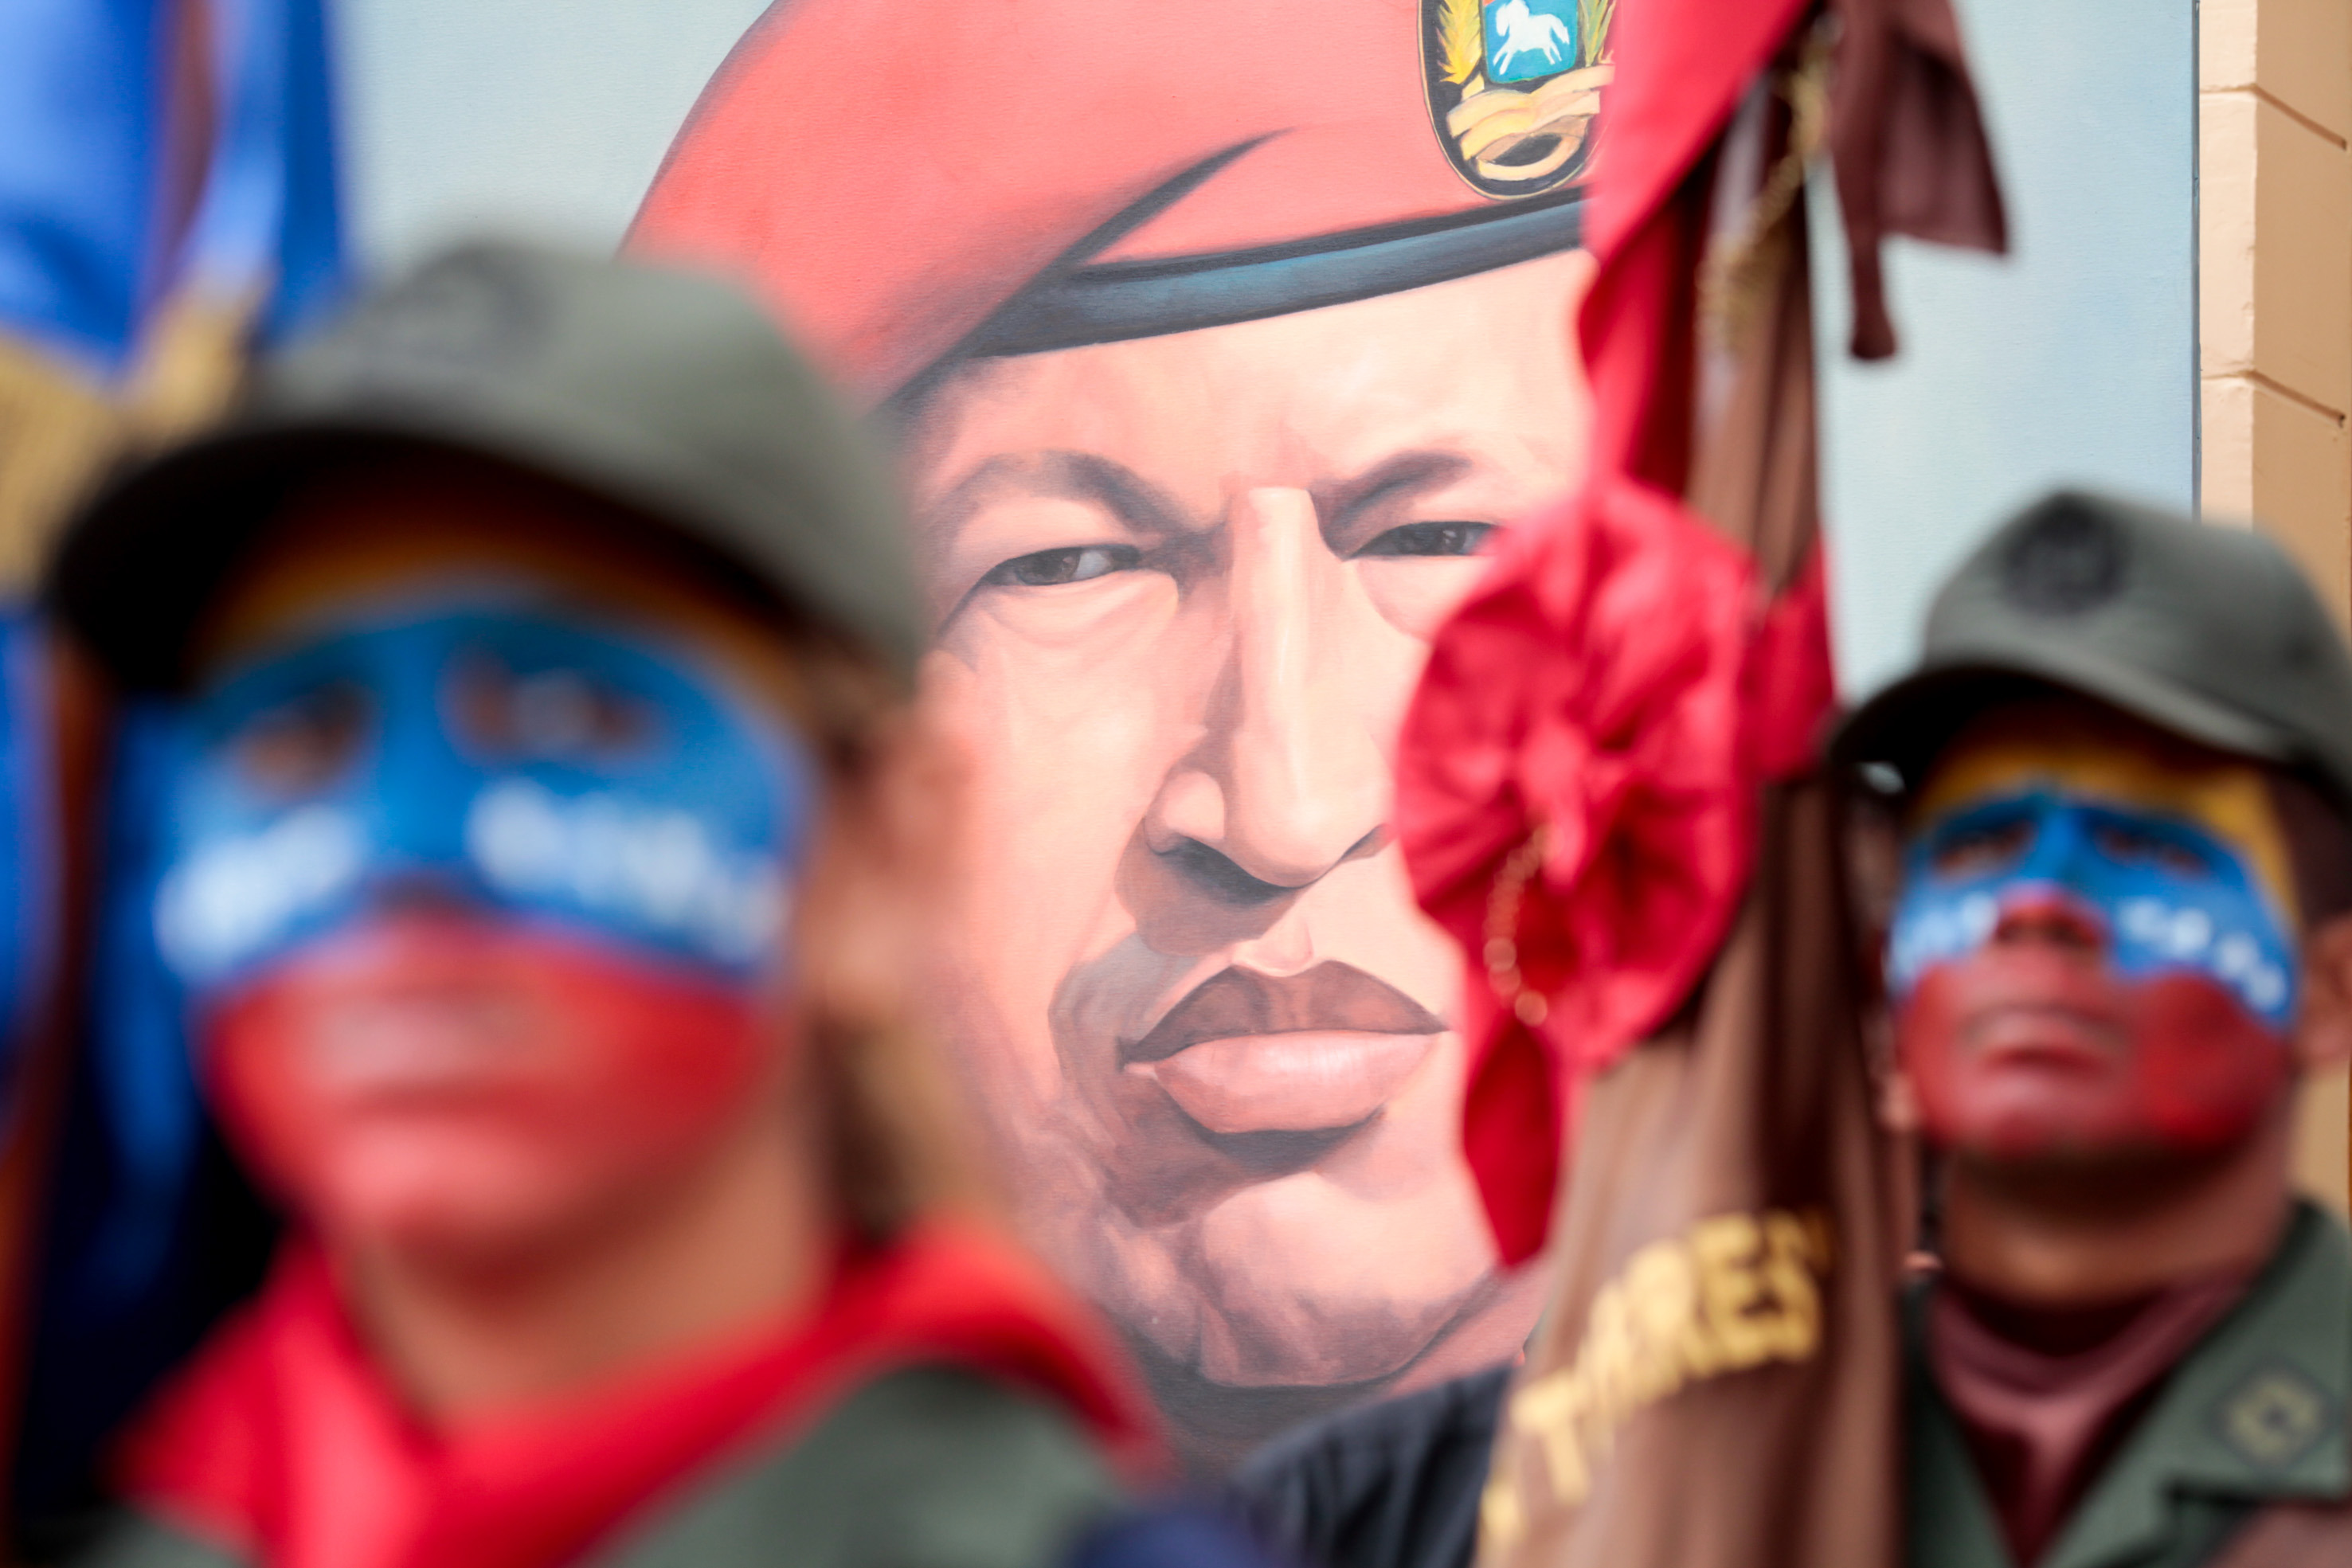 Des dirigeants du monde déplorent la mort de Chavez alors que les Etats-Unis veulent améliorer les relations